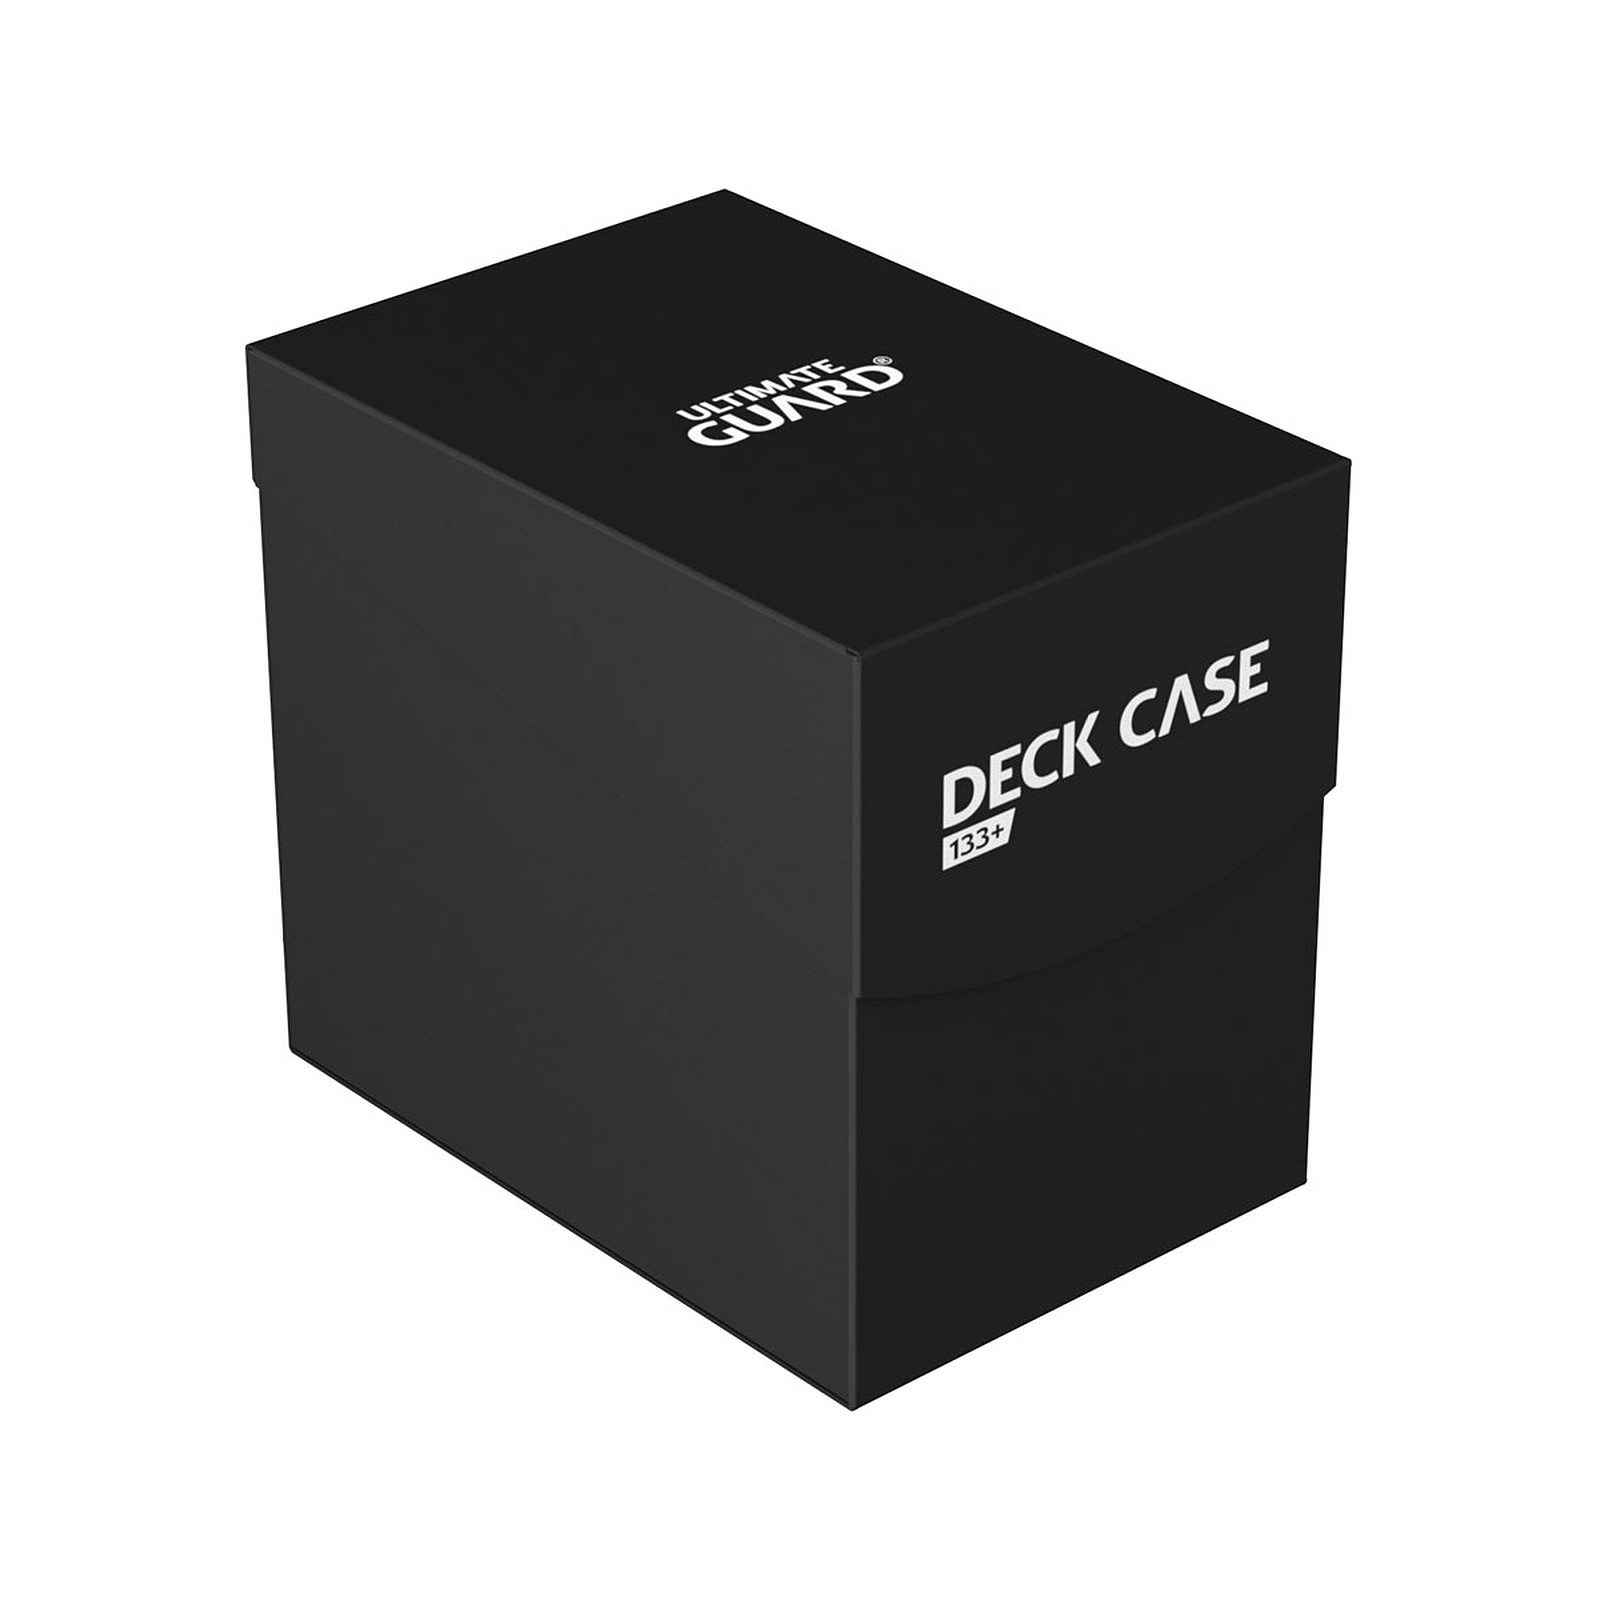 Ultimate Guard - Boite pour cartes Deck Case 133+ taille standard Noir - Accessoire jeux Ultimate Guard